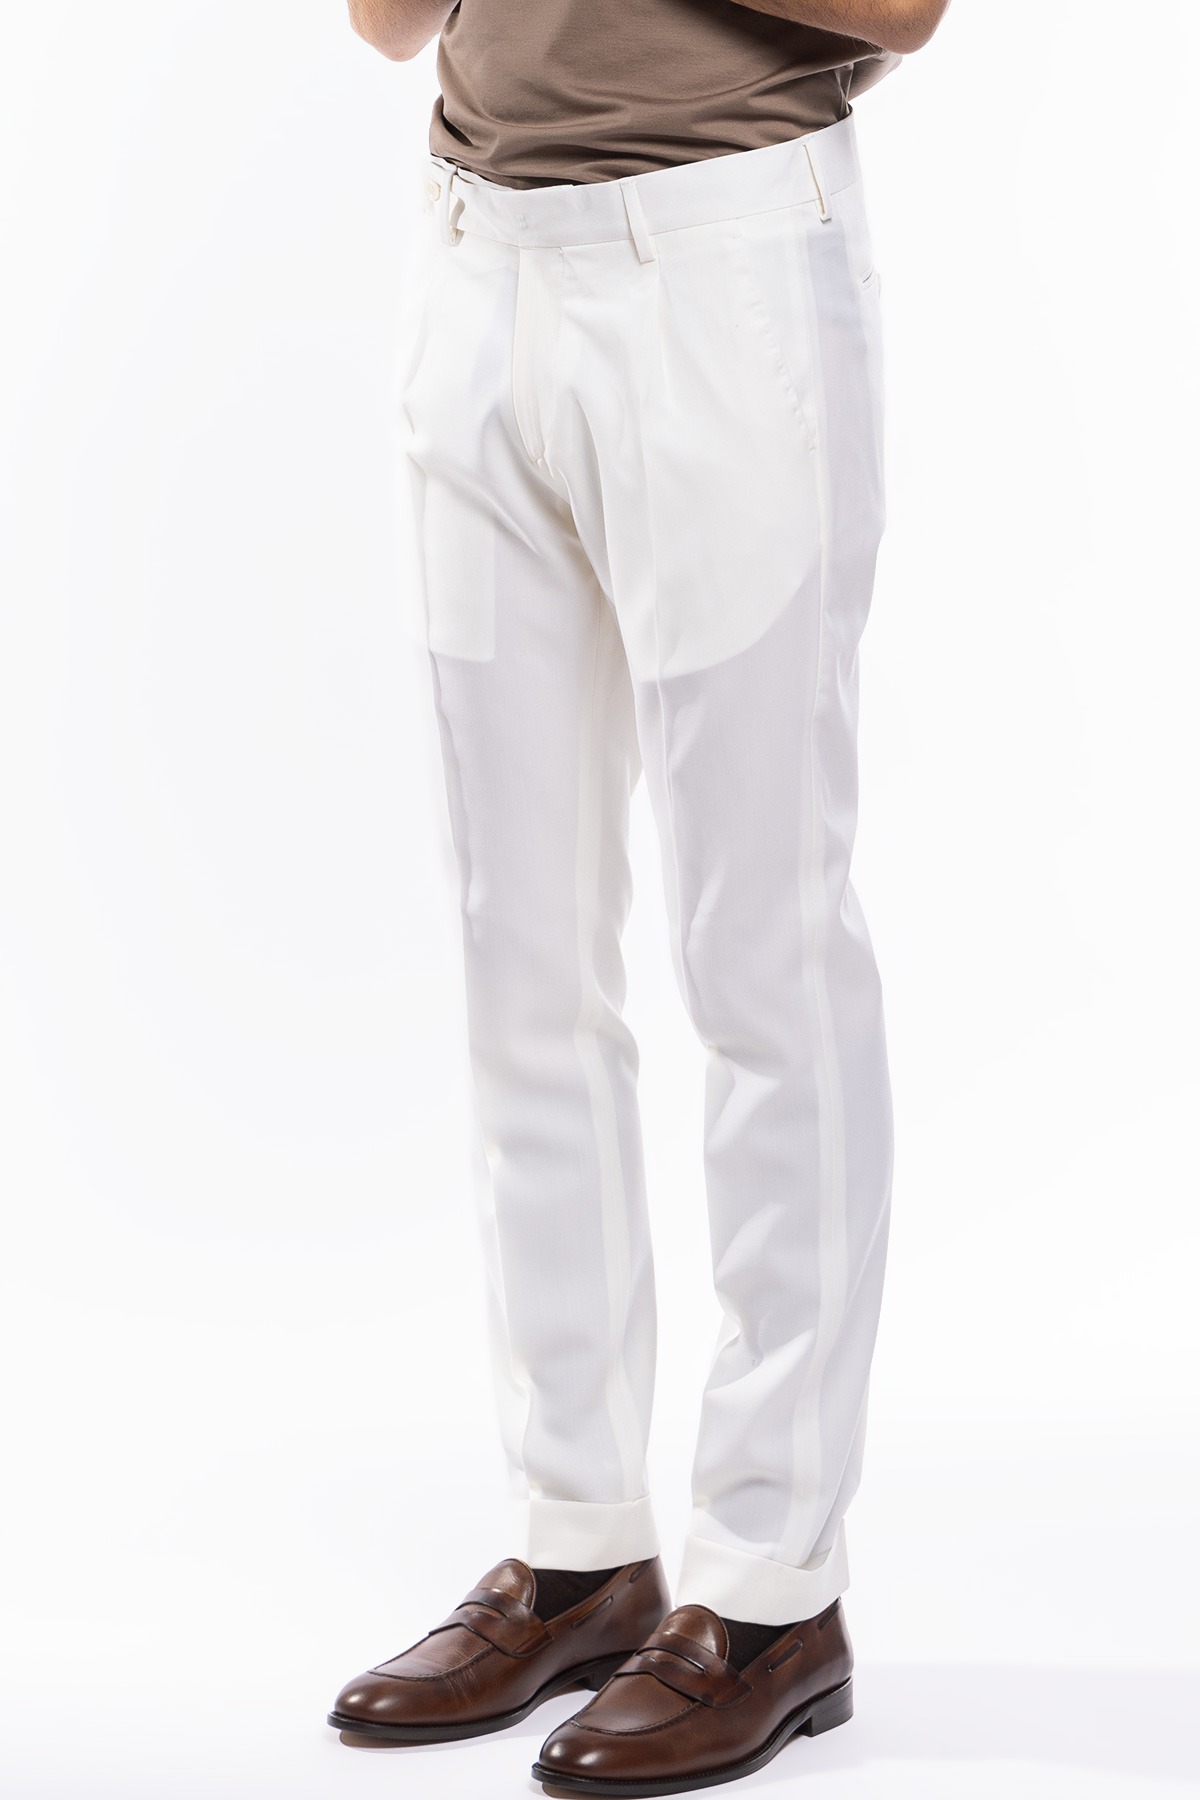 Pantalone uomo Bianco fresco lana super 130's tasca america con una pinces e risvolto 4cm